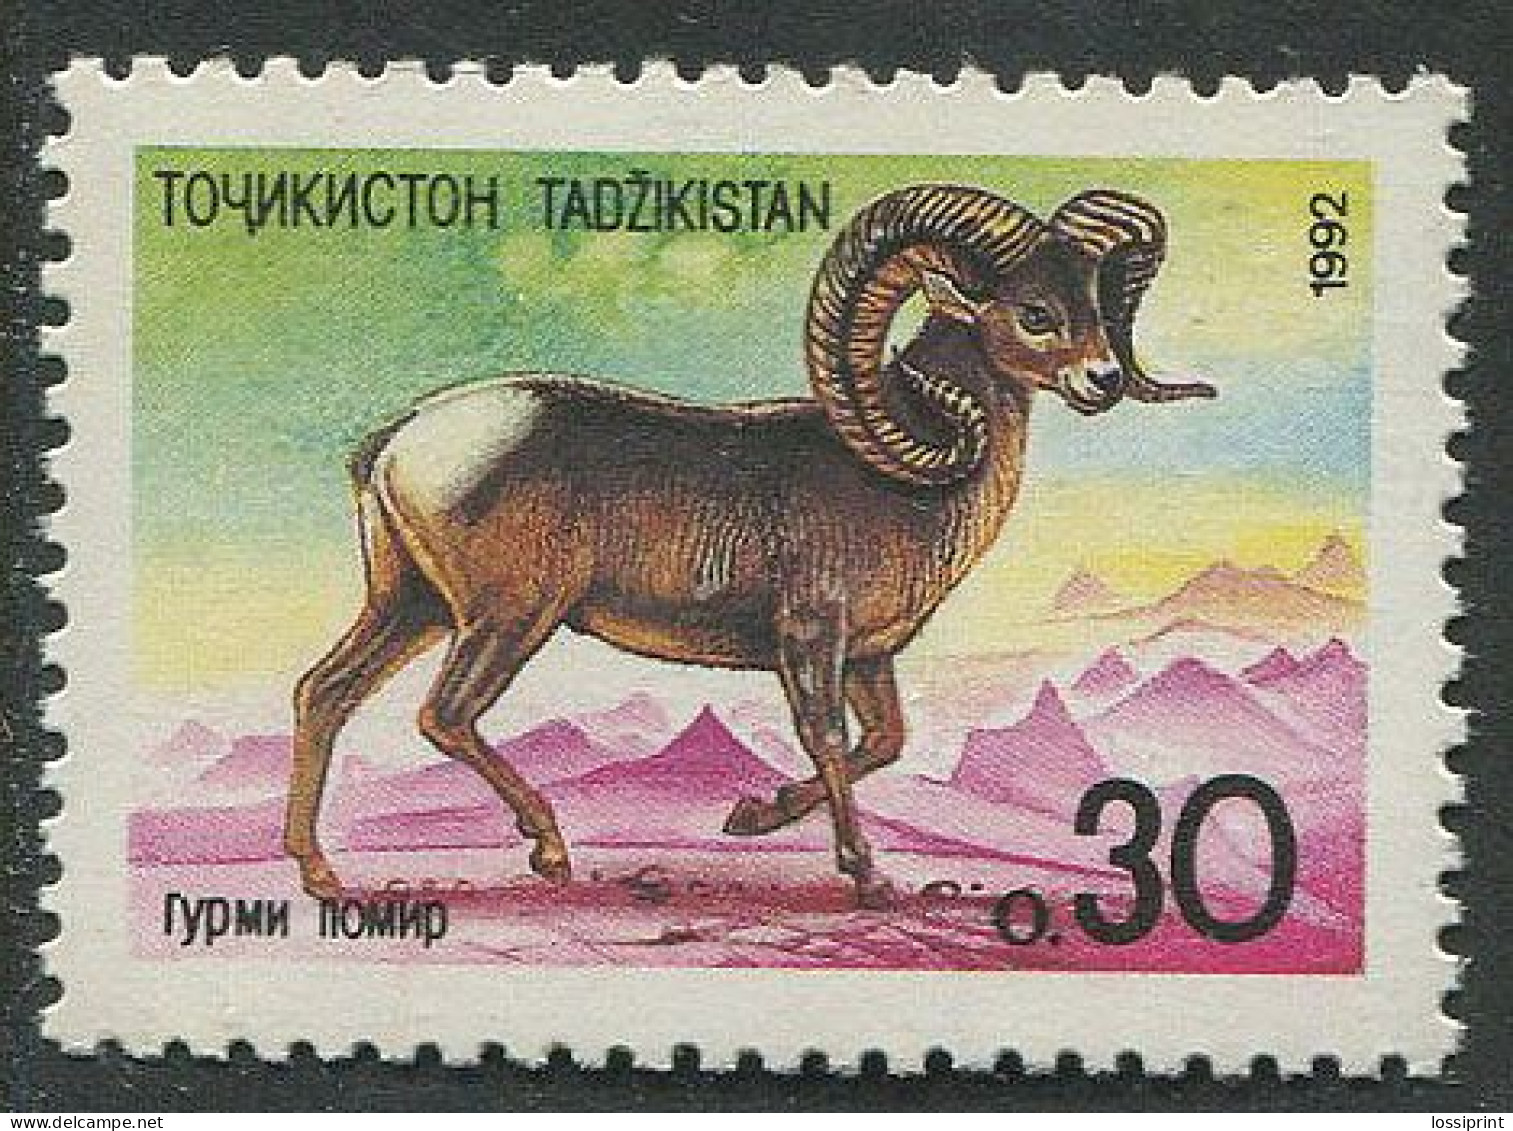 Tajikistan:Unused Stamp Animal, Goat, 1992, MNH - Tayikistán